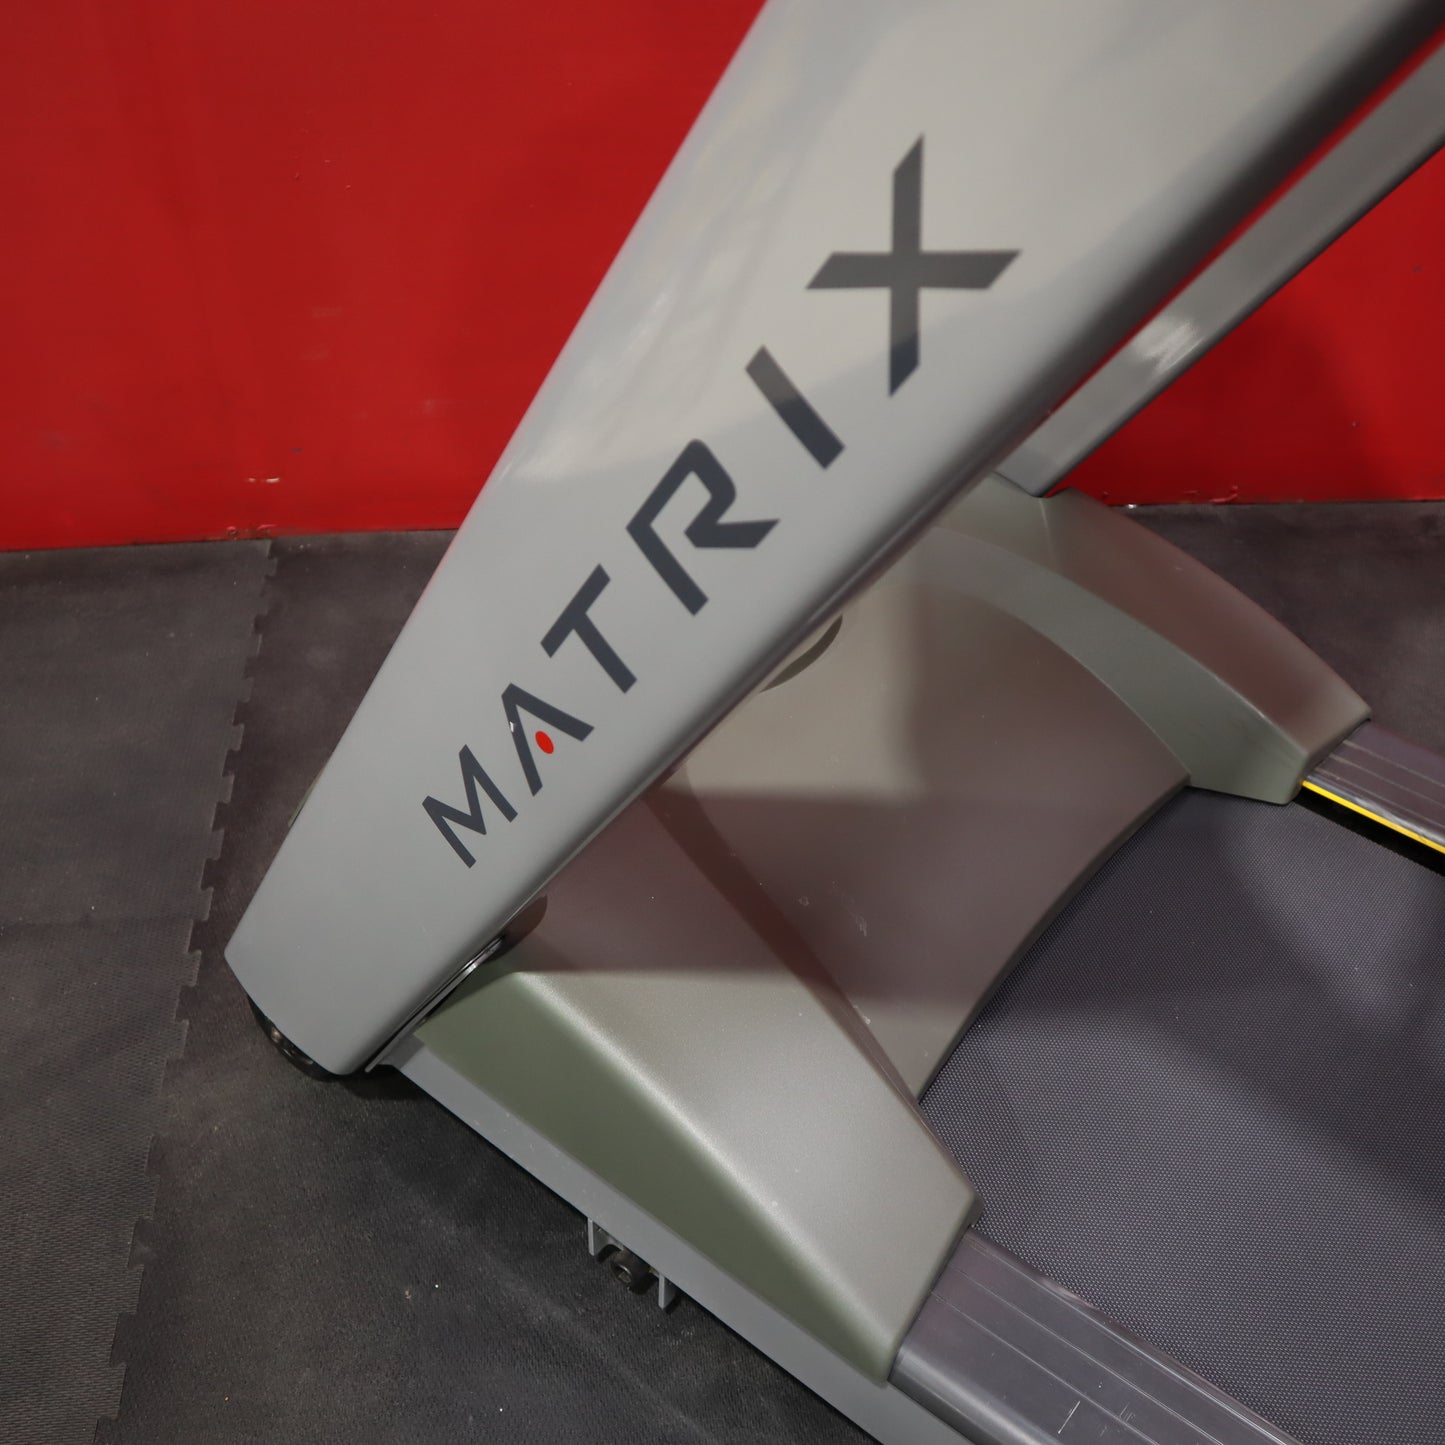 Matrix T1x Treadmill (Refurbished)